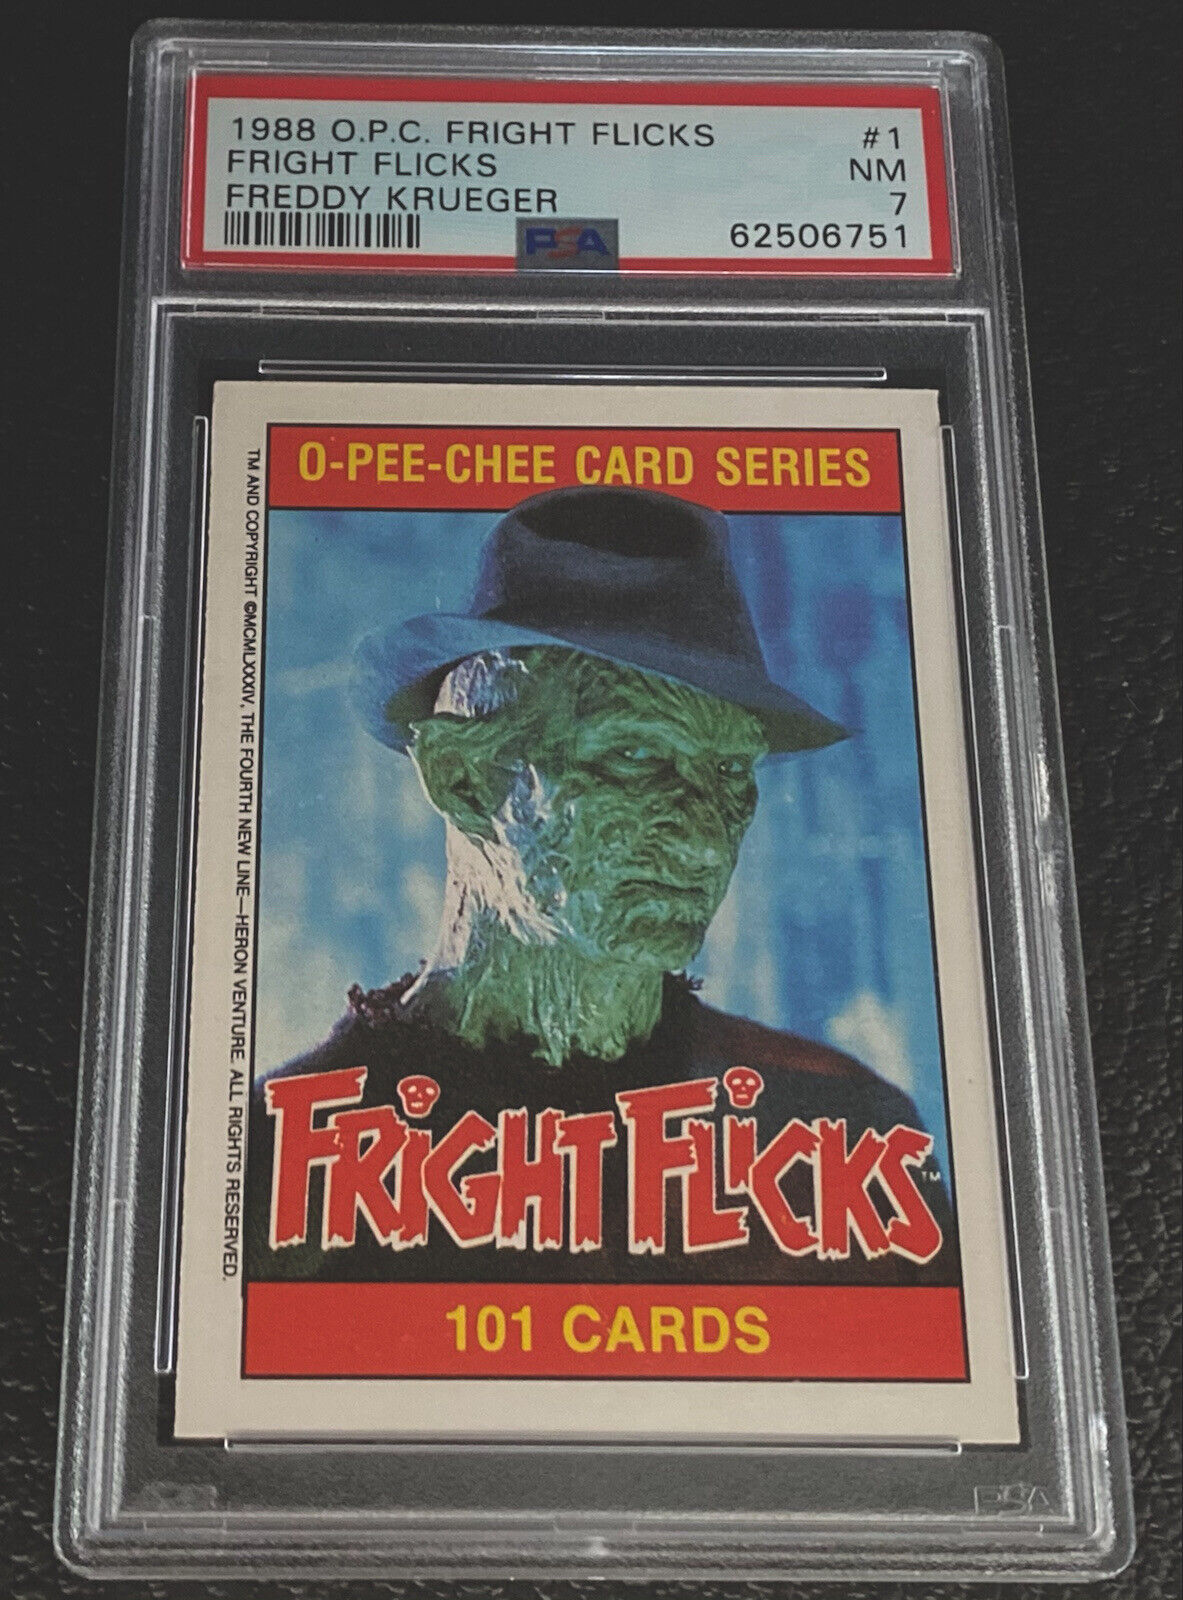 PSA 7 1988 OPC Fright Flicks Freddy Krueger #1 A Nightmare On Elm Street Card